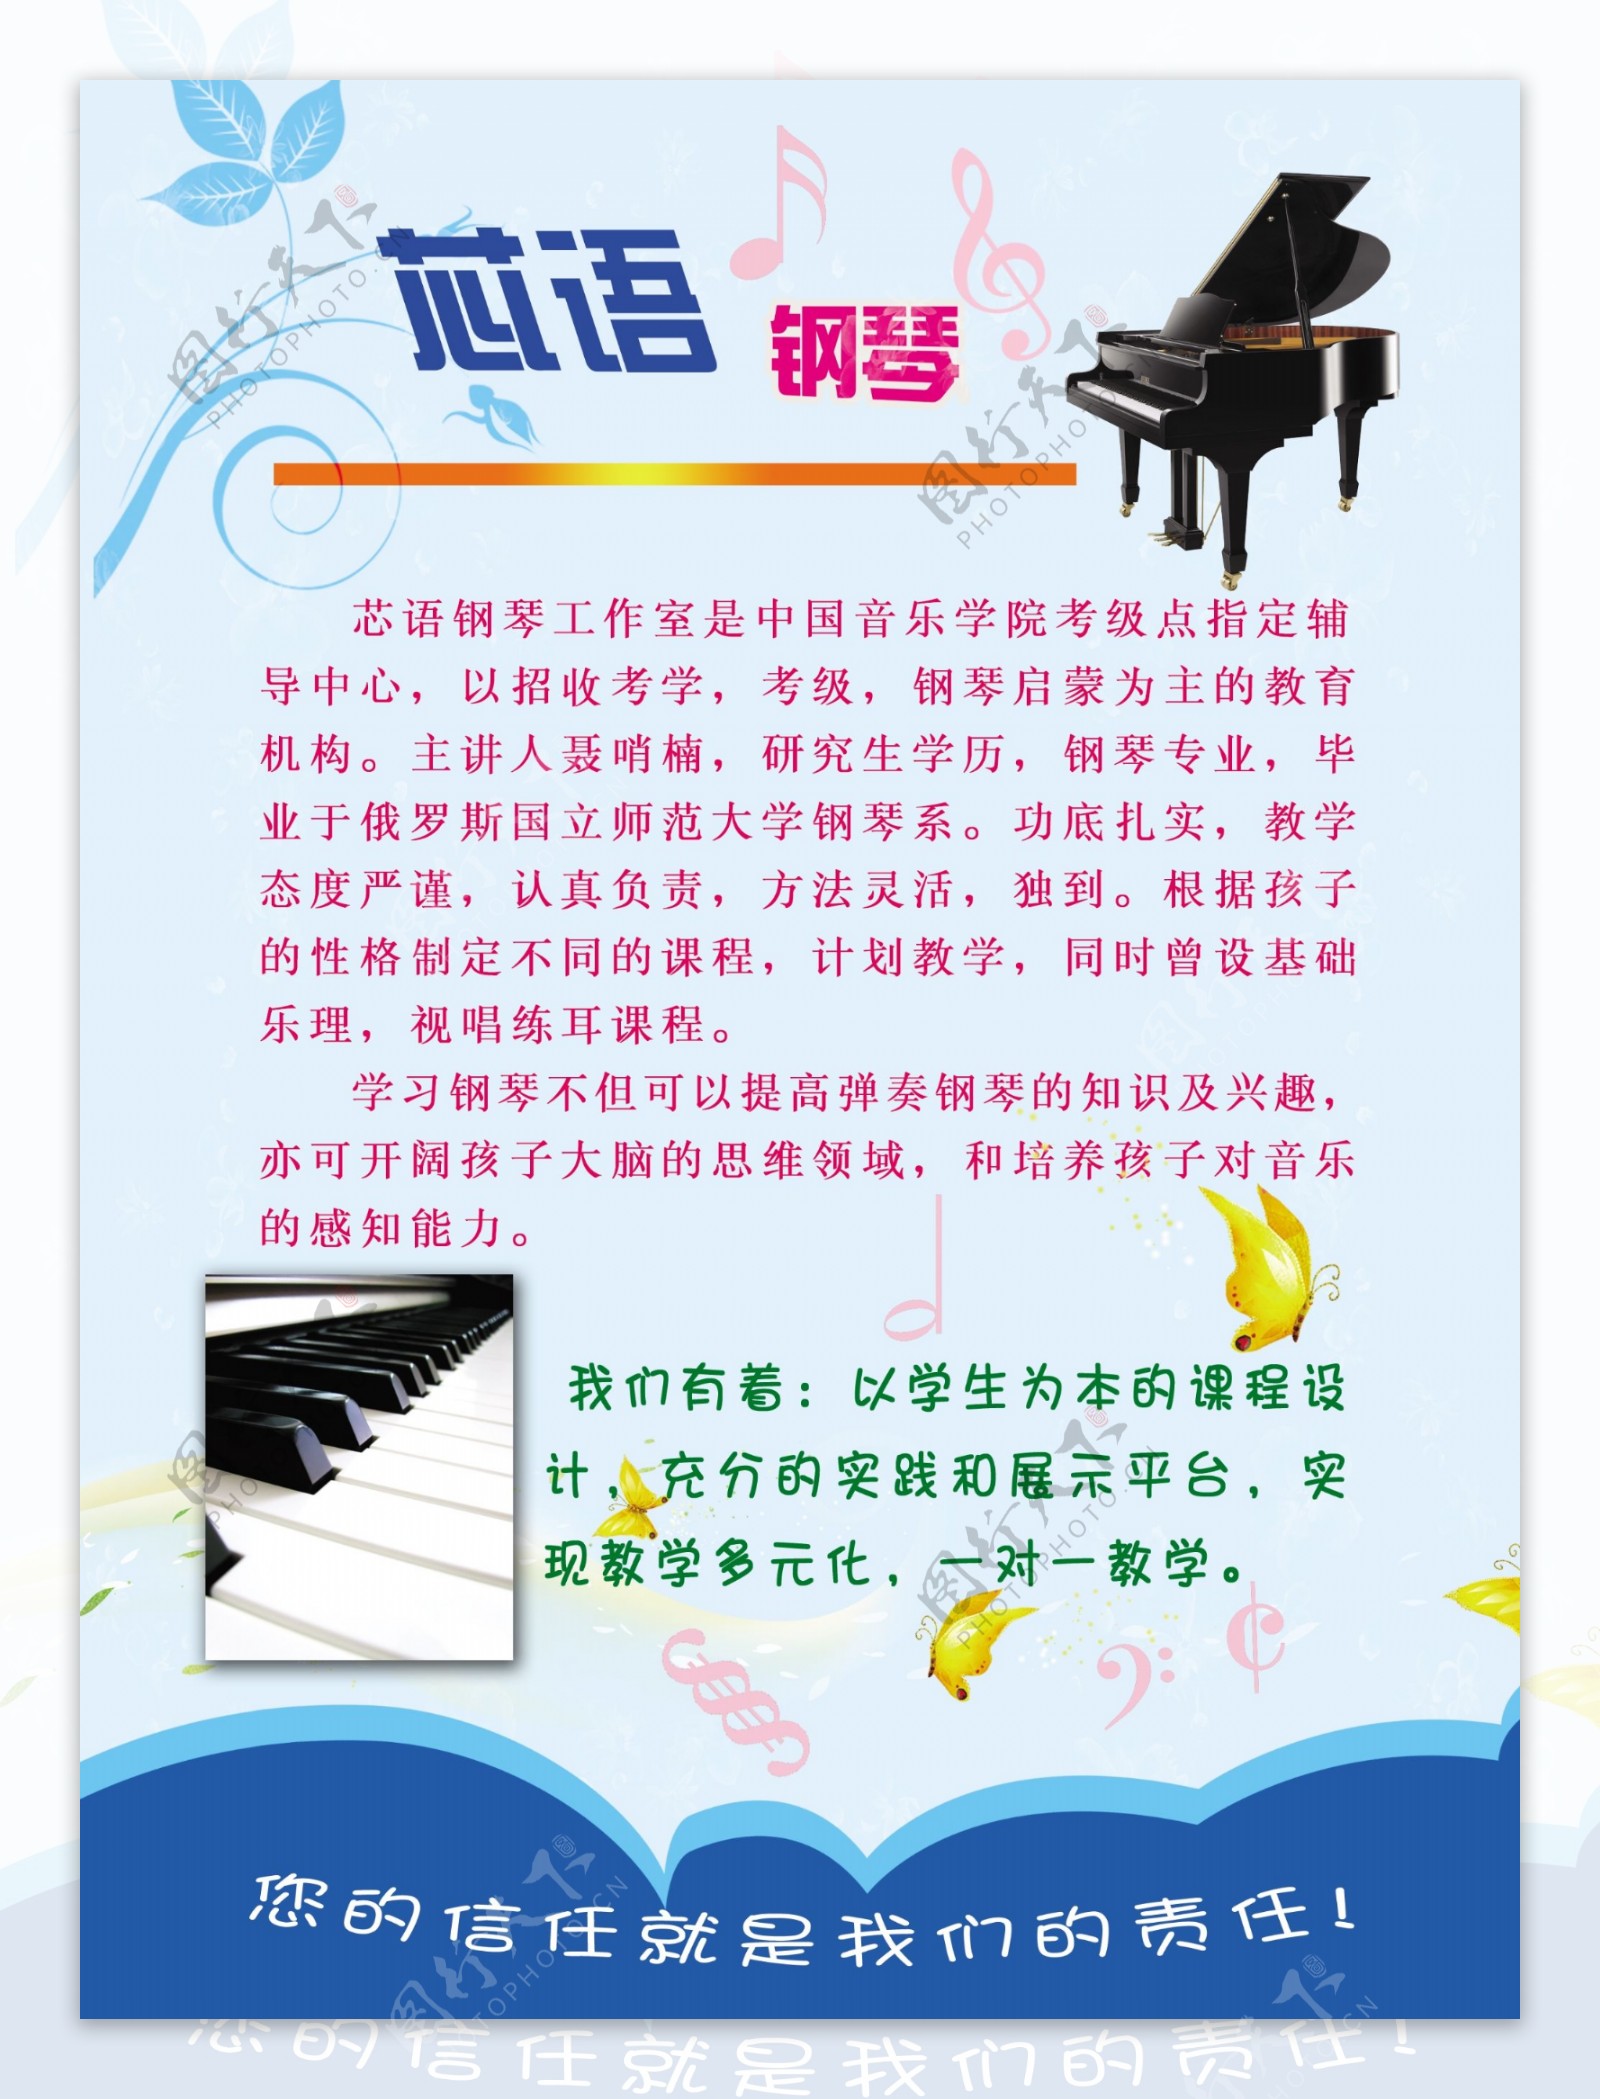 钢琴彩页海报宣传蓝色图片